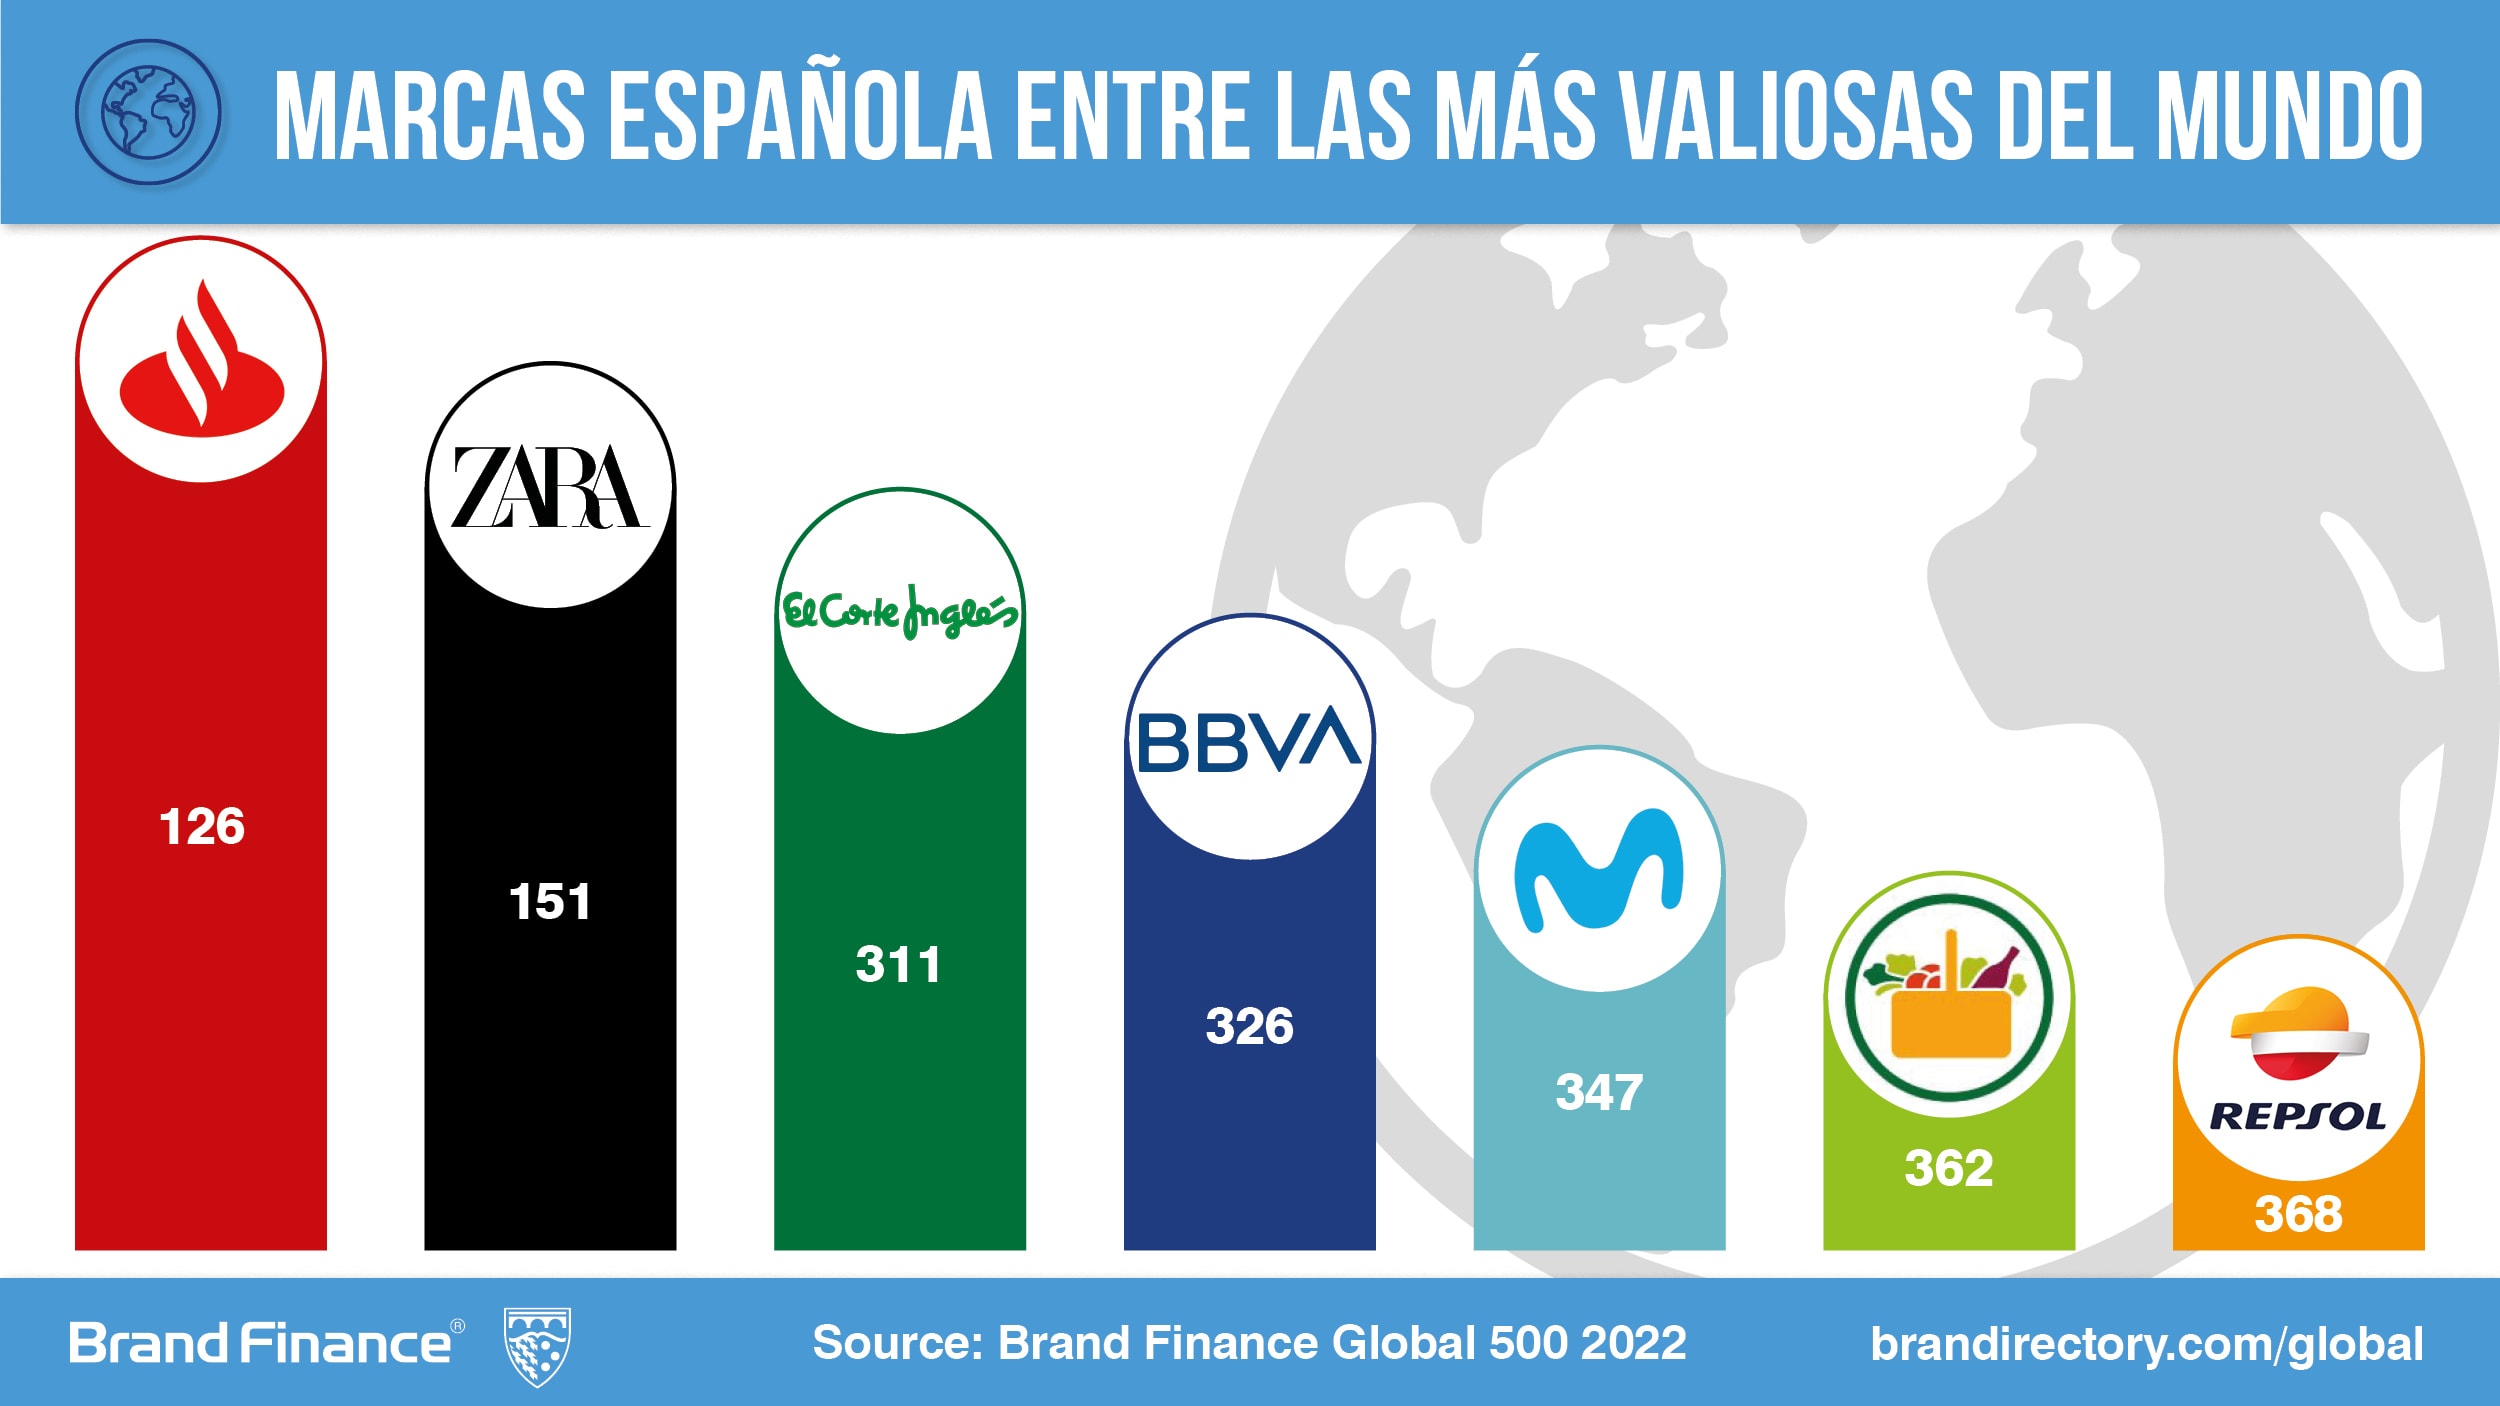 Las marcas españolas más valiosas del mundo a recuperar el valor perdido con la pandemia según Brand Finance Press Release | Brand Finance